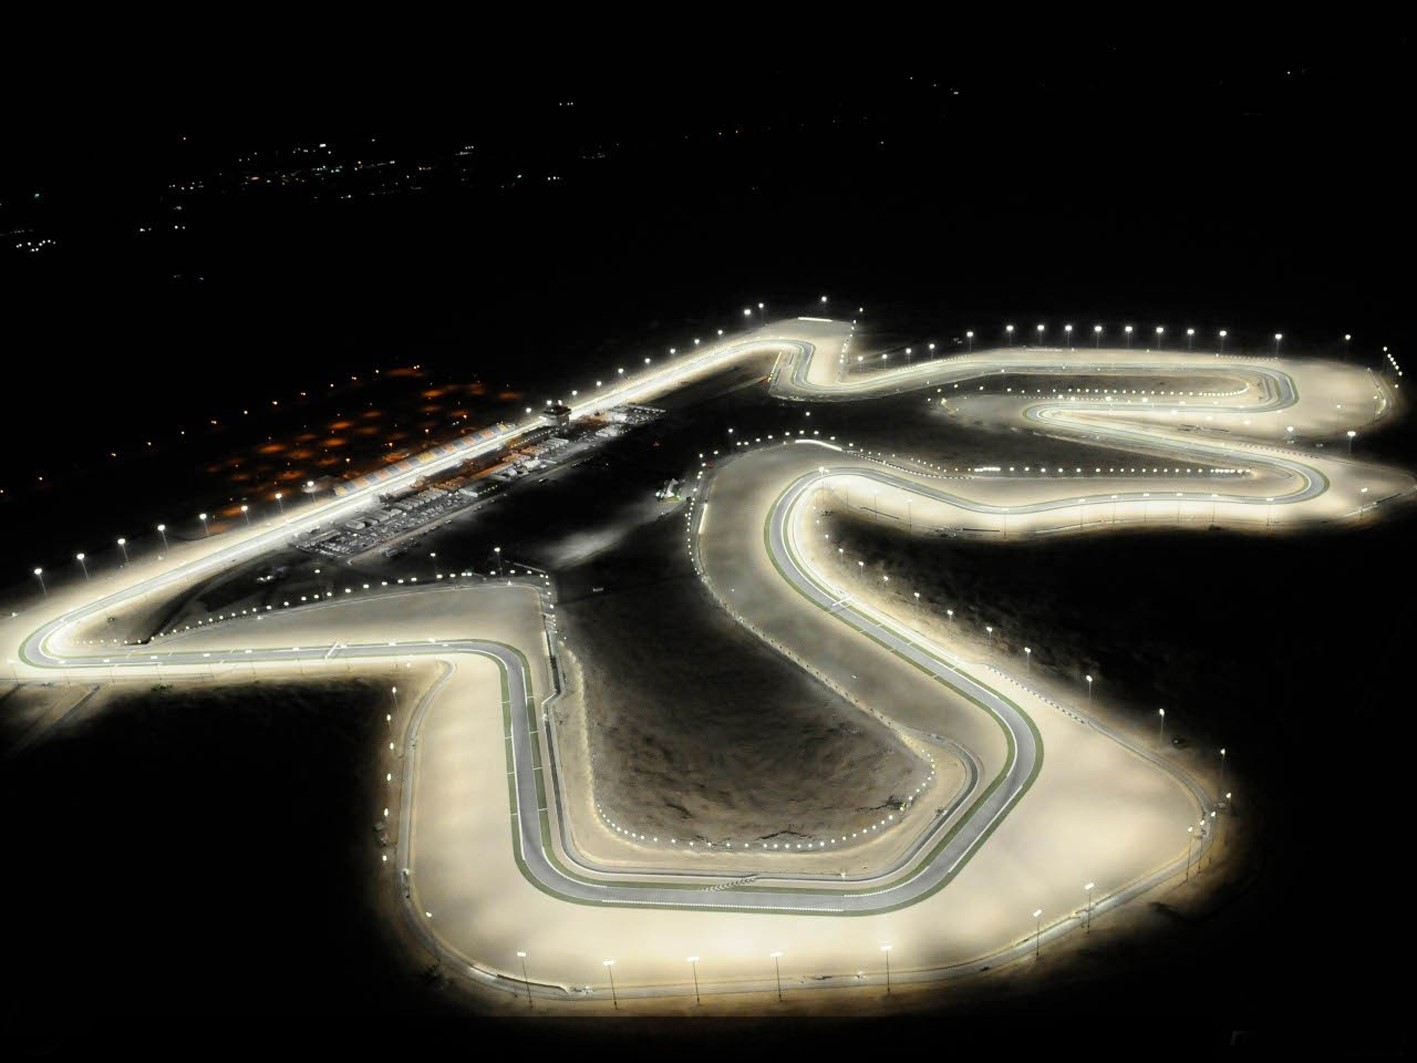 Qatar Circuit at night